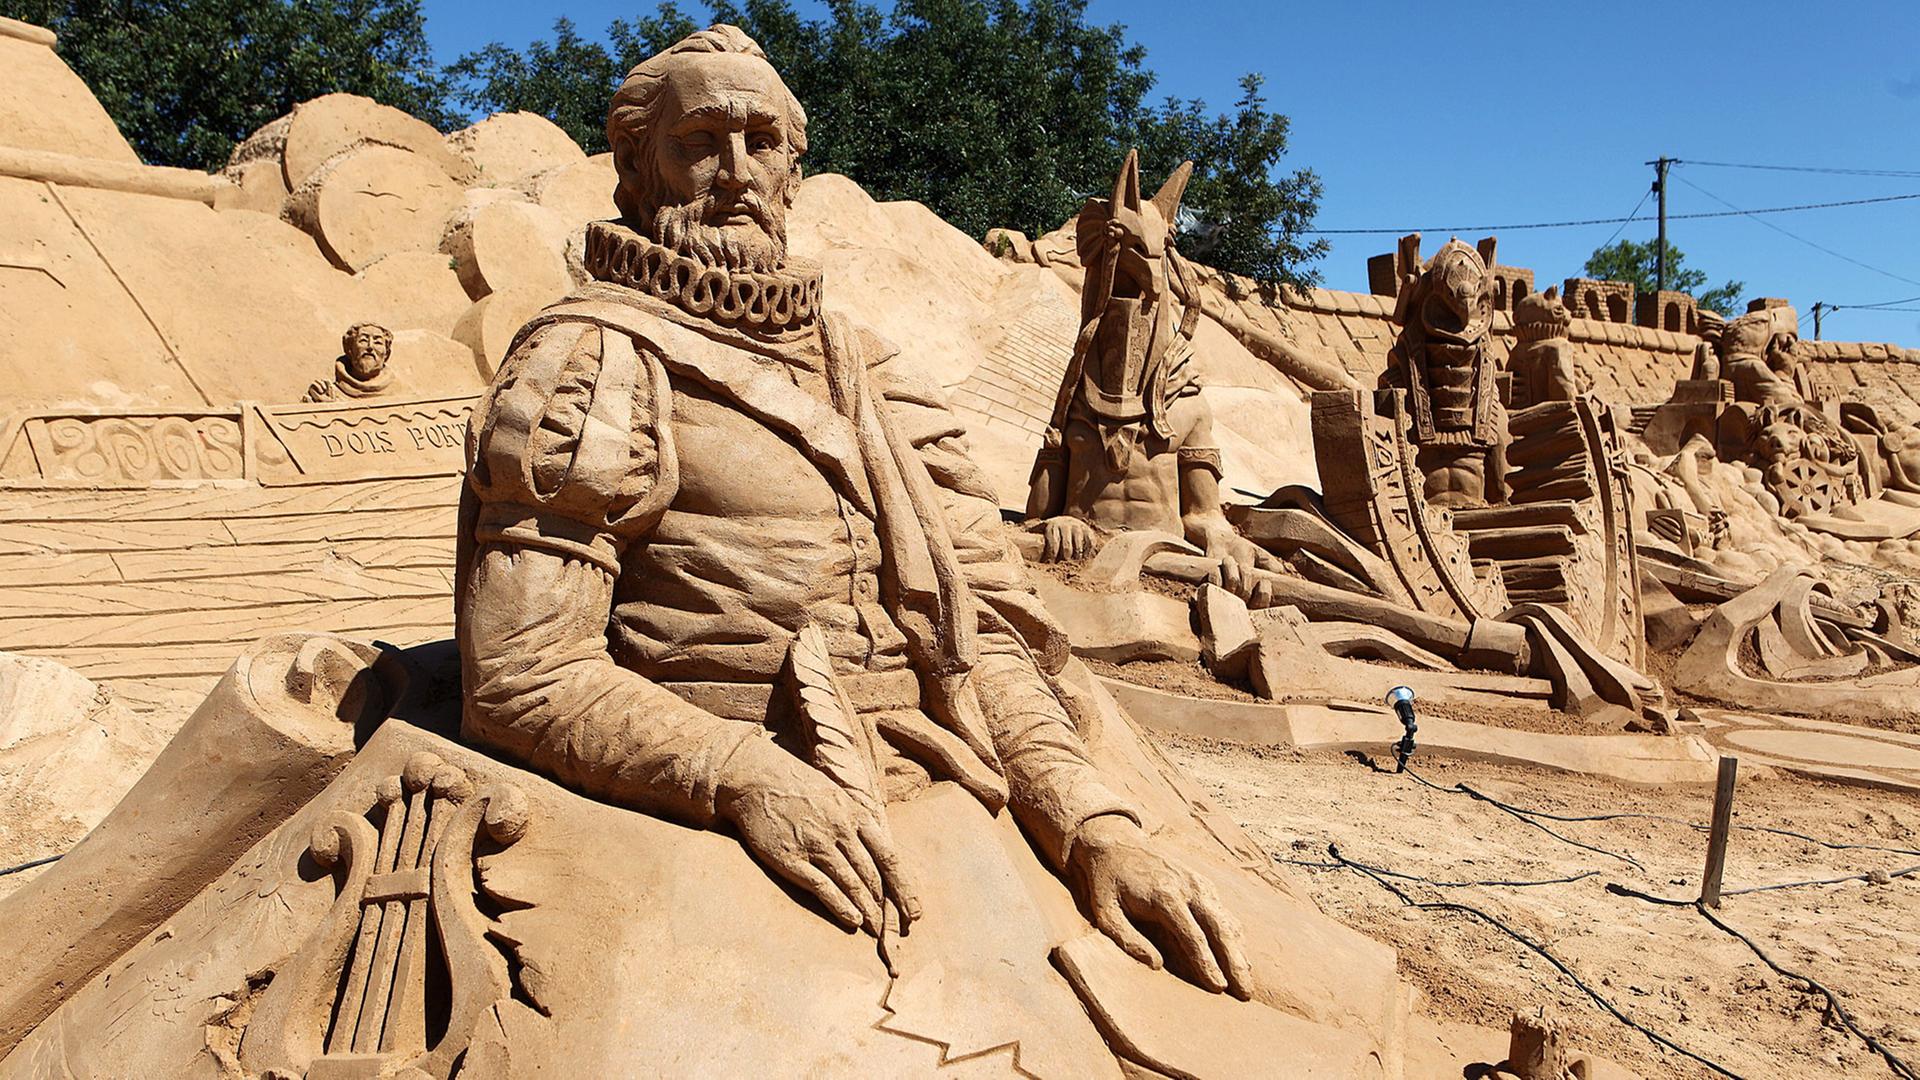 Eine Sand-Skulptur des portugiesischen Nationaldichters Luis de Camoes, aufgenommen beim International Sand Sculpture Festival in Armacao de Pera, Portugal am 23 Mai 2012.